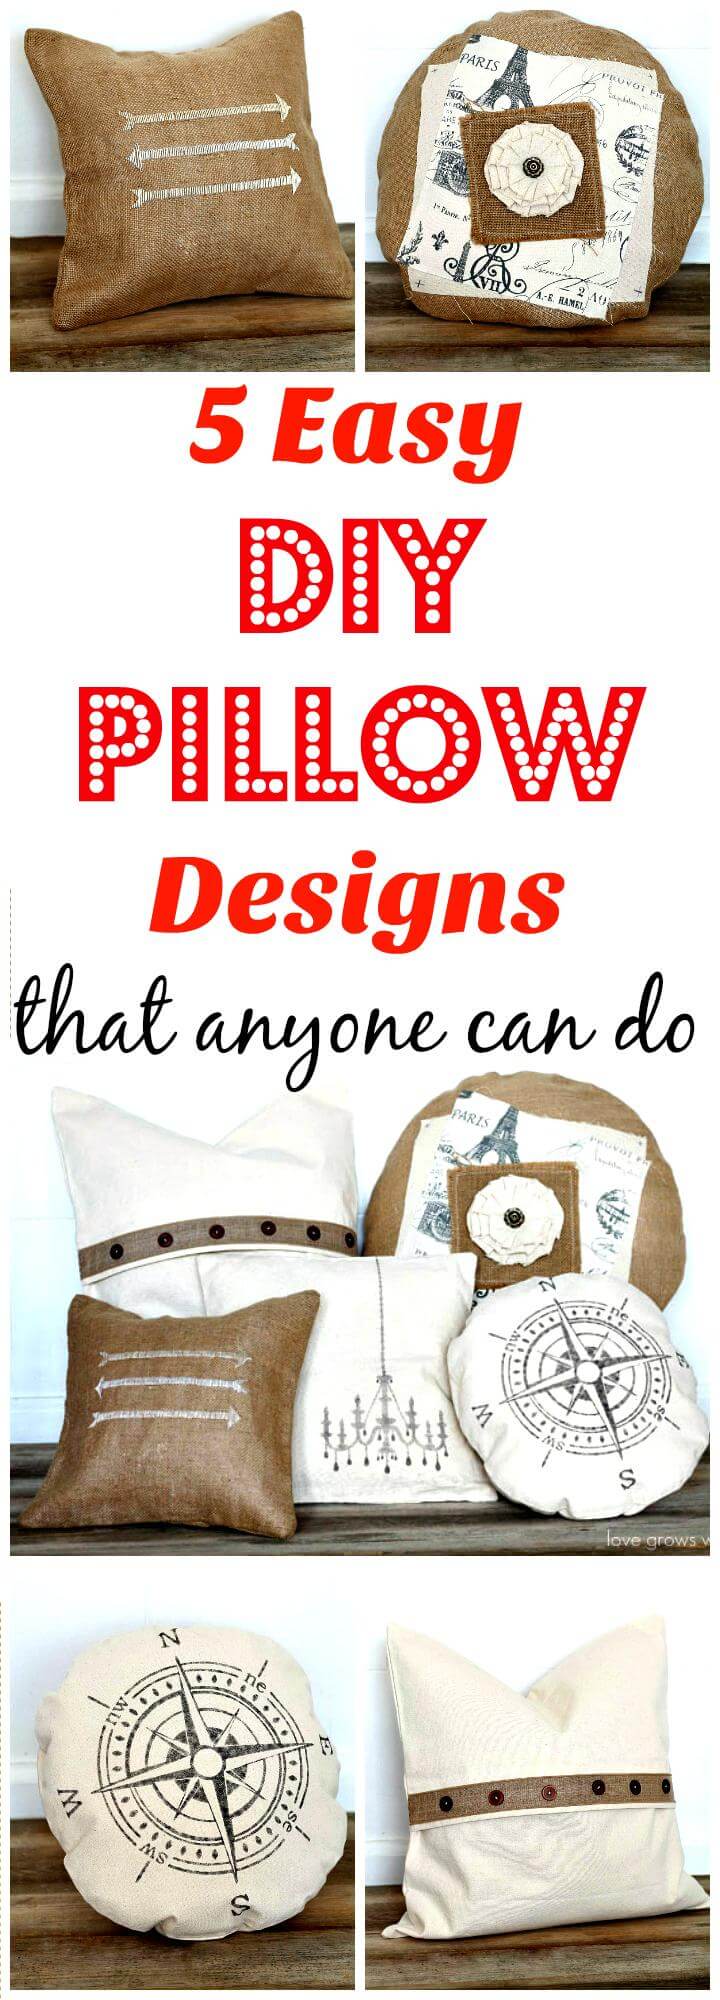 5 diseños sencillos de almohadas de bricolaje que cualquiera puede hacer